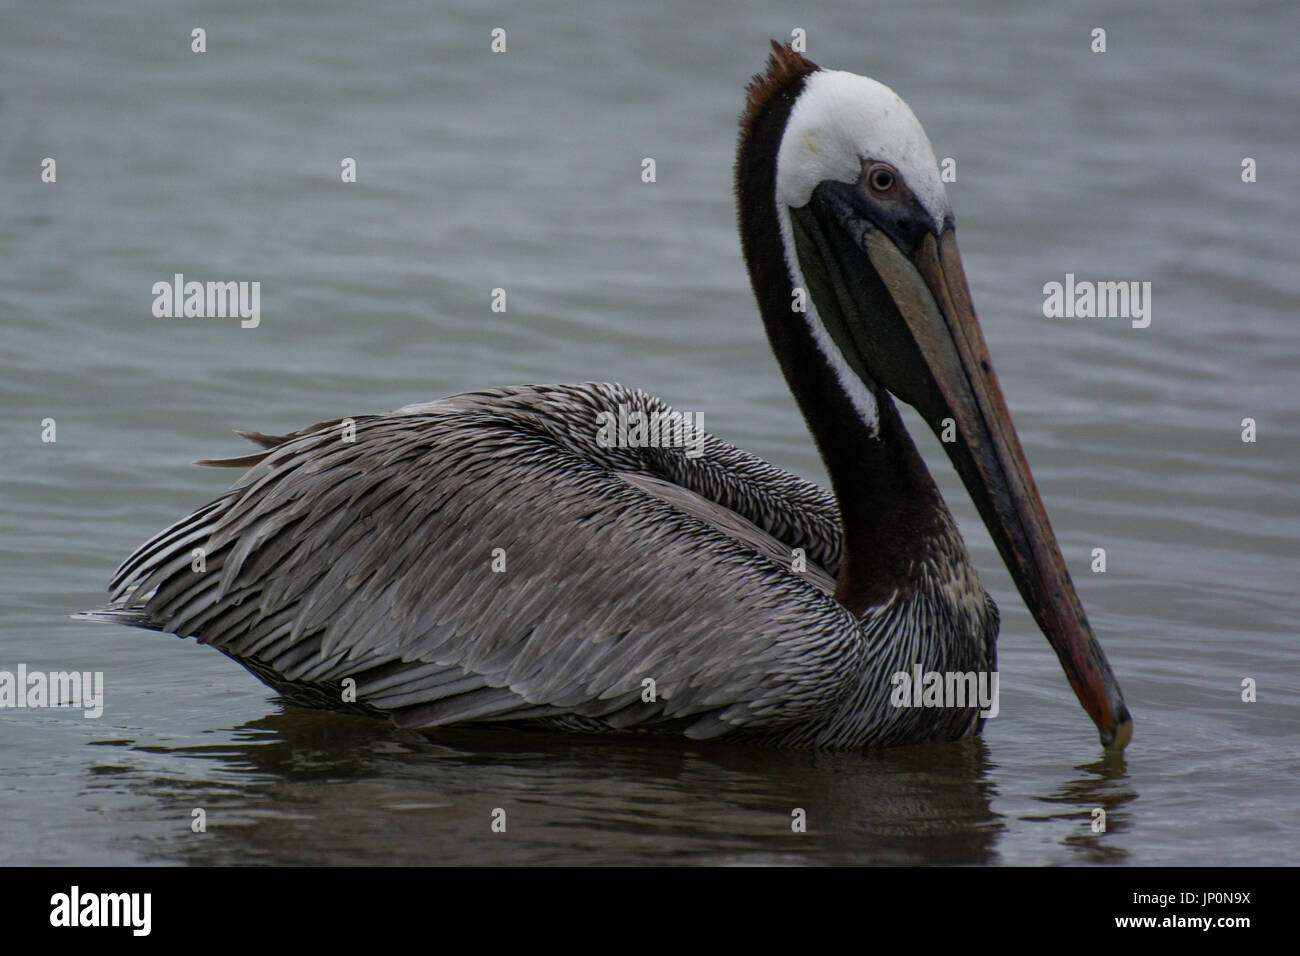 Pelican At the beach, Puerto Lopez, Ecuador Stock Photo